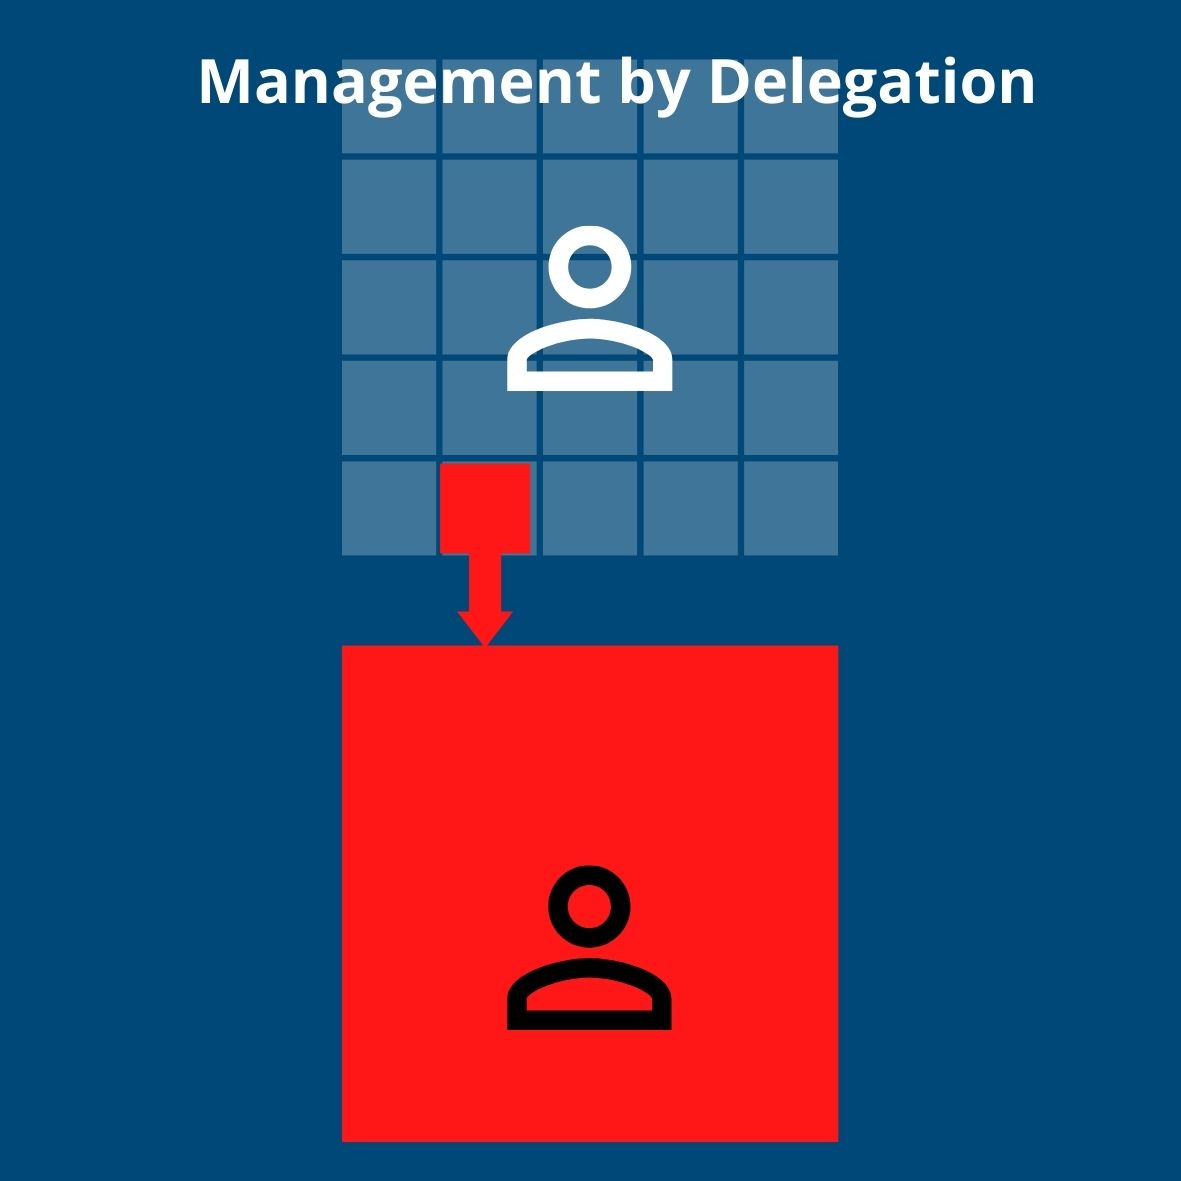 Management by Delegation